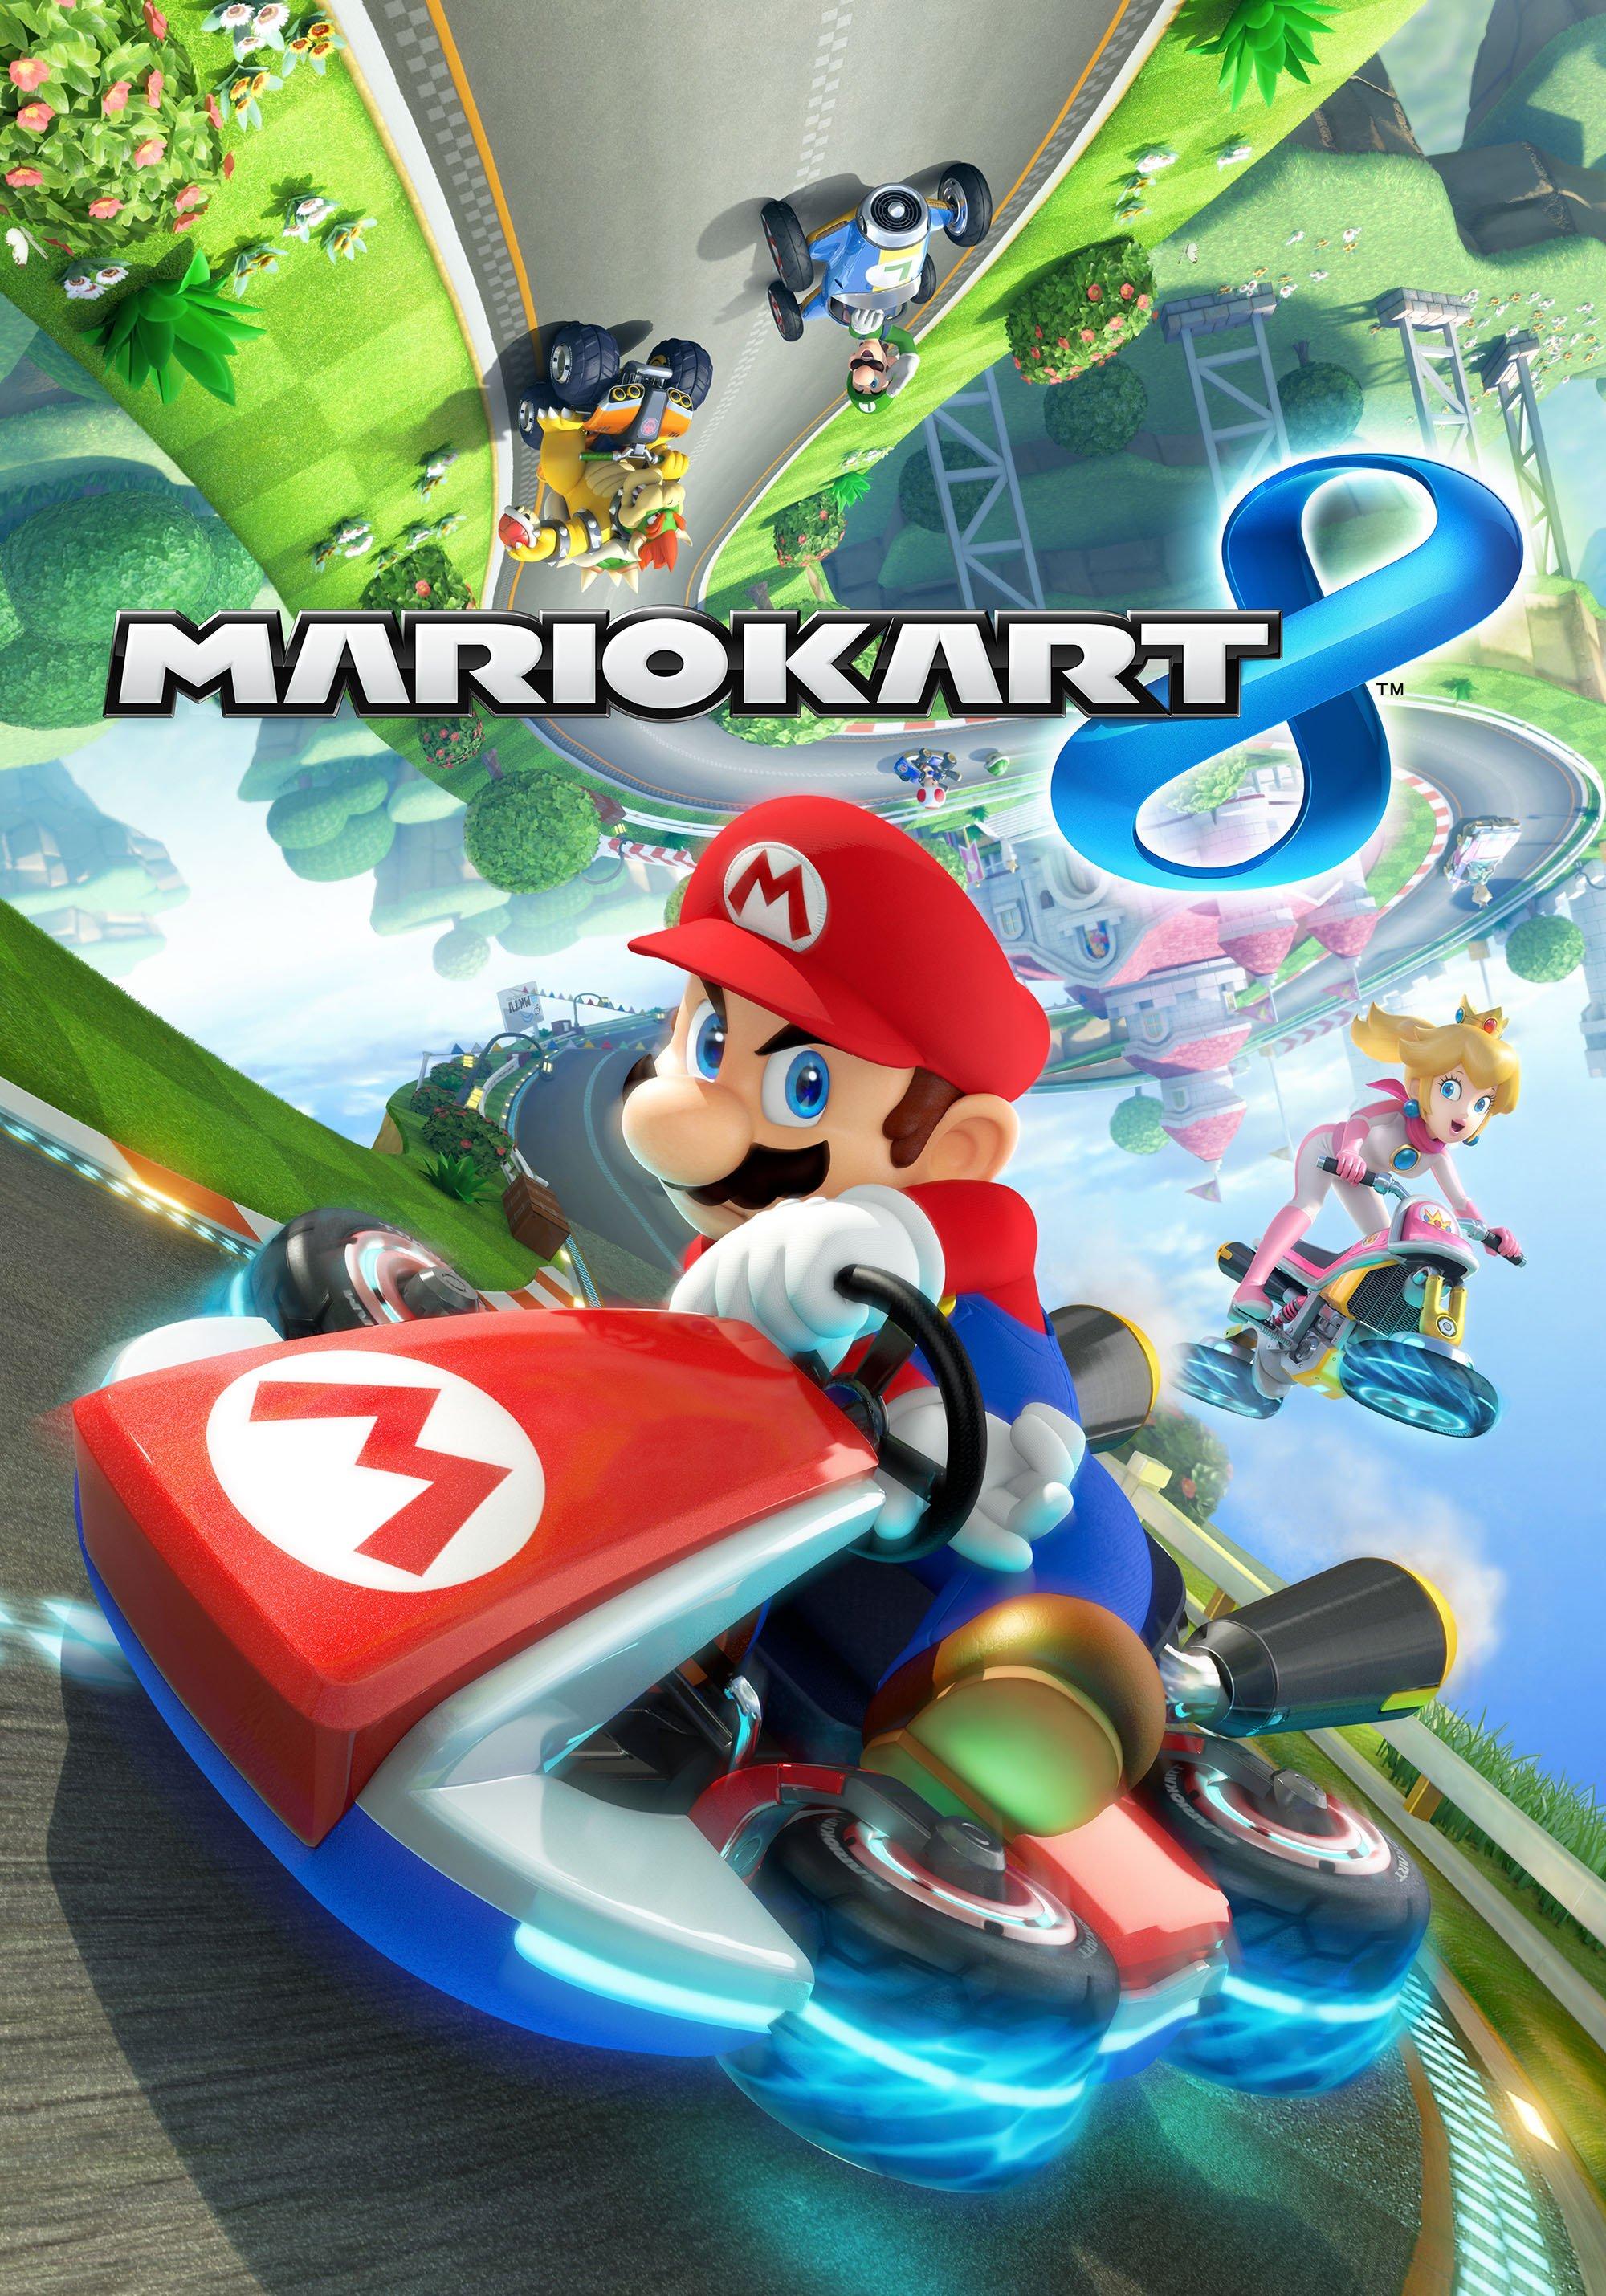 Ich Habe Bestätigt Jane Austen Textur Nintendo Wii U Super Mario Kart 8 Diplom Es Gibt Einen 4217